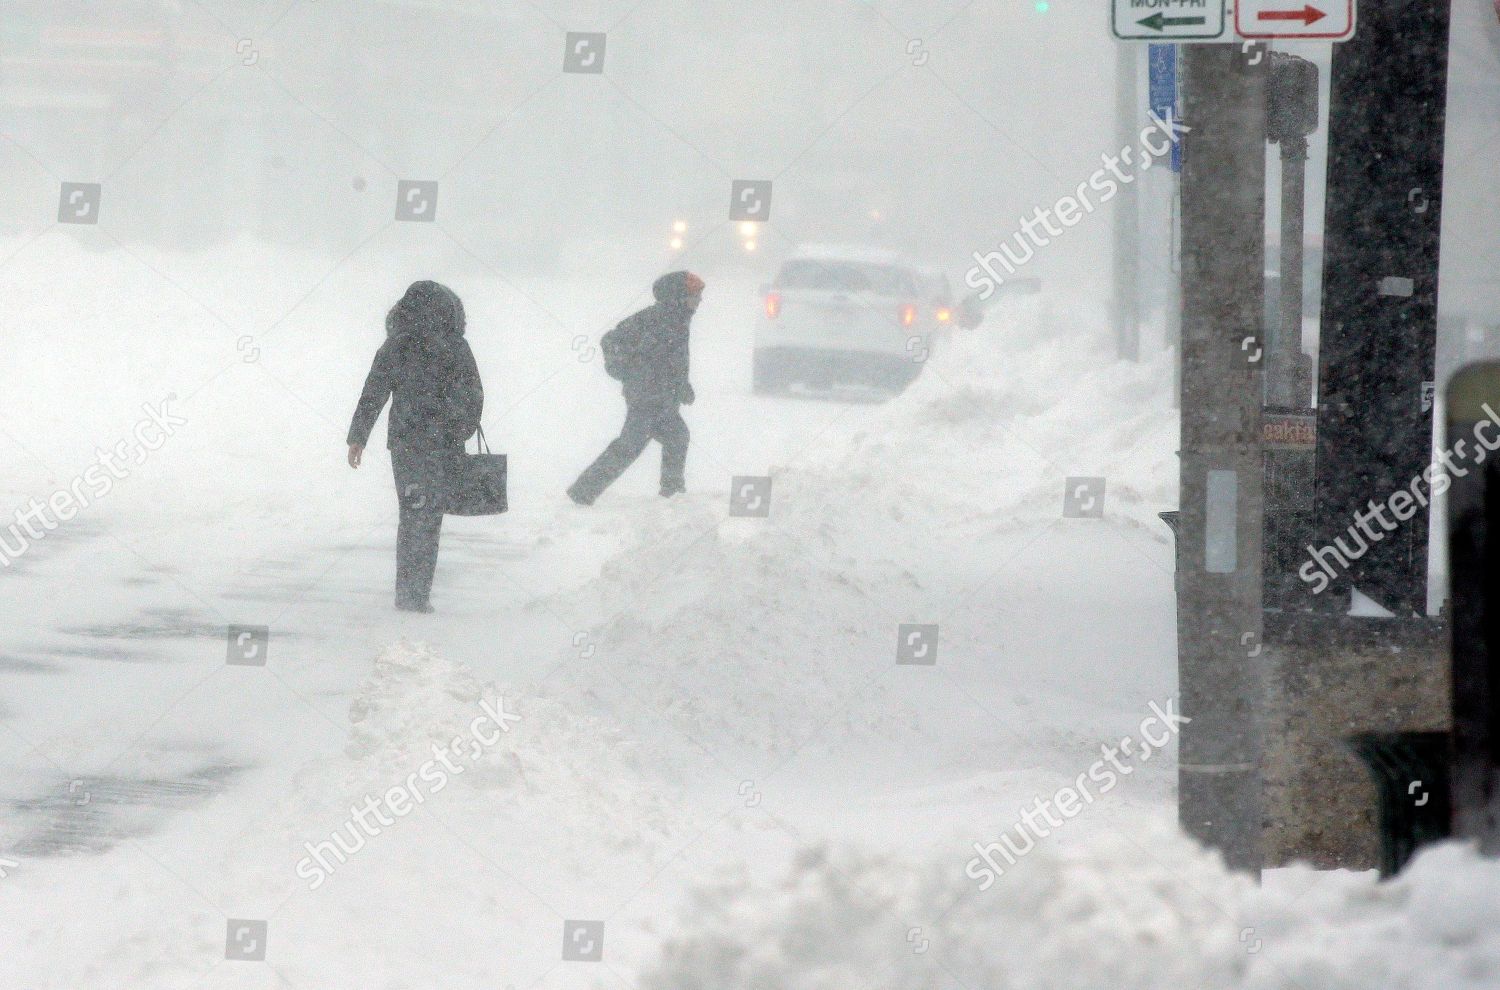 winter-weather-massachusetts-worcester-usa-shutterstock-editorial-8520232b.jpg